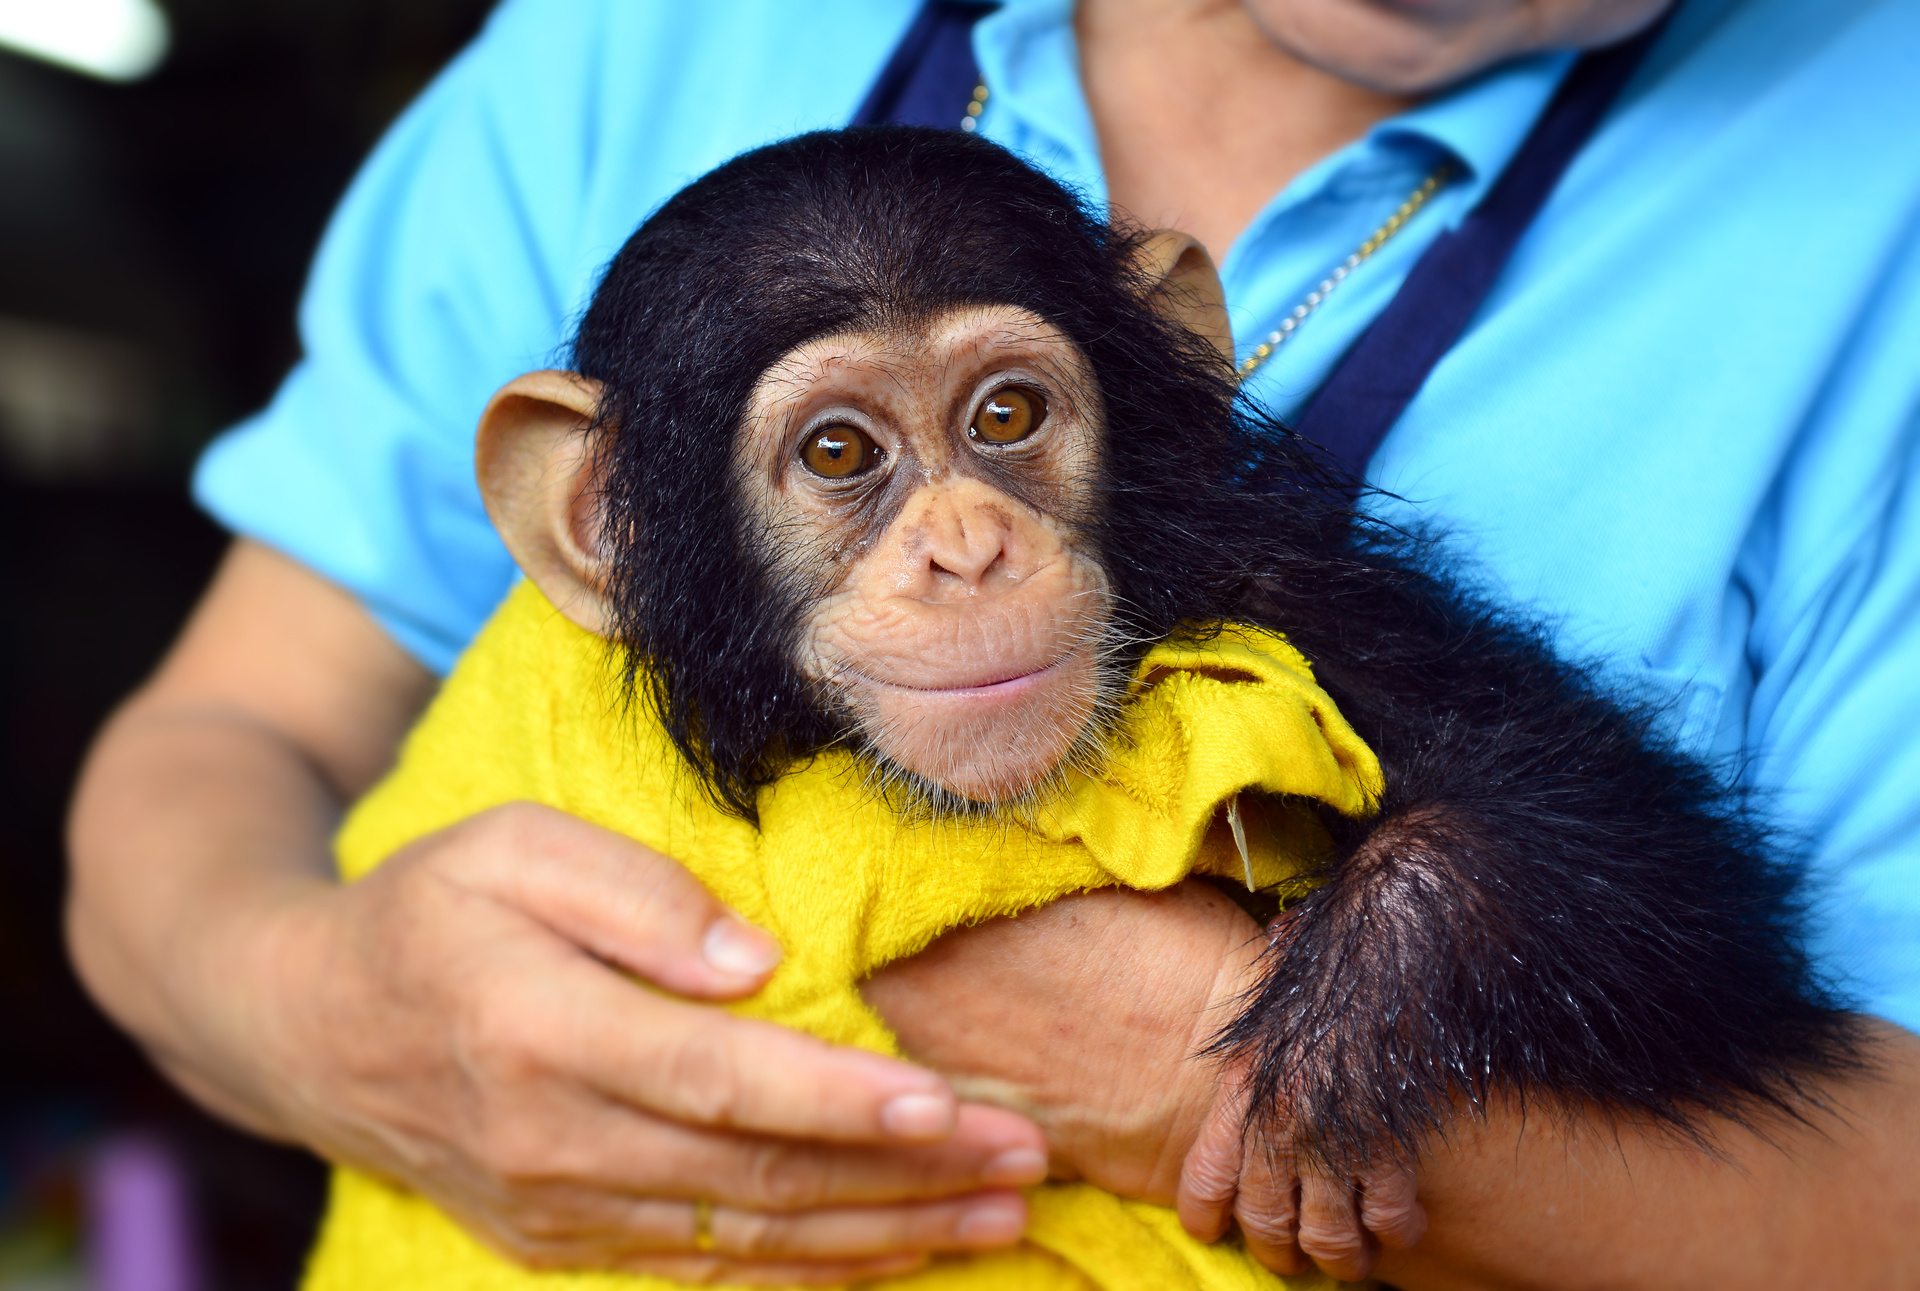 Los chimpancés perfeccionan su capacidad de aprendizaje a lo largo de la vida